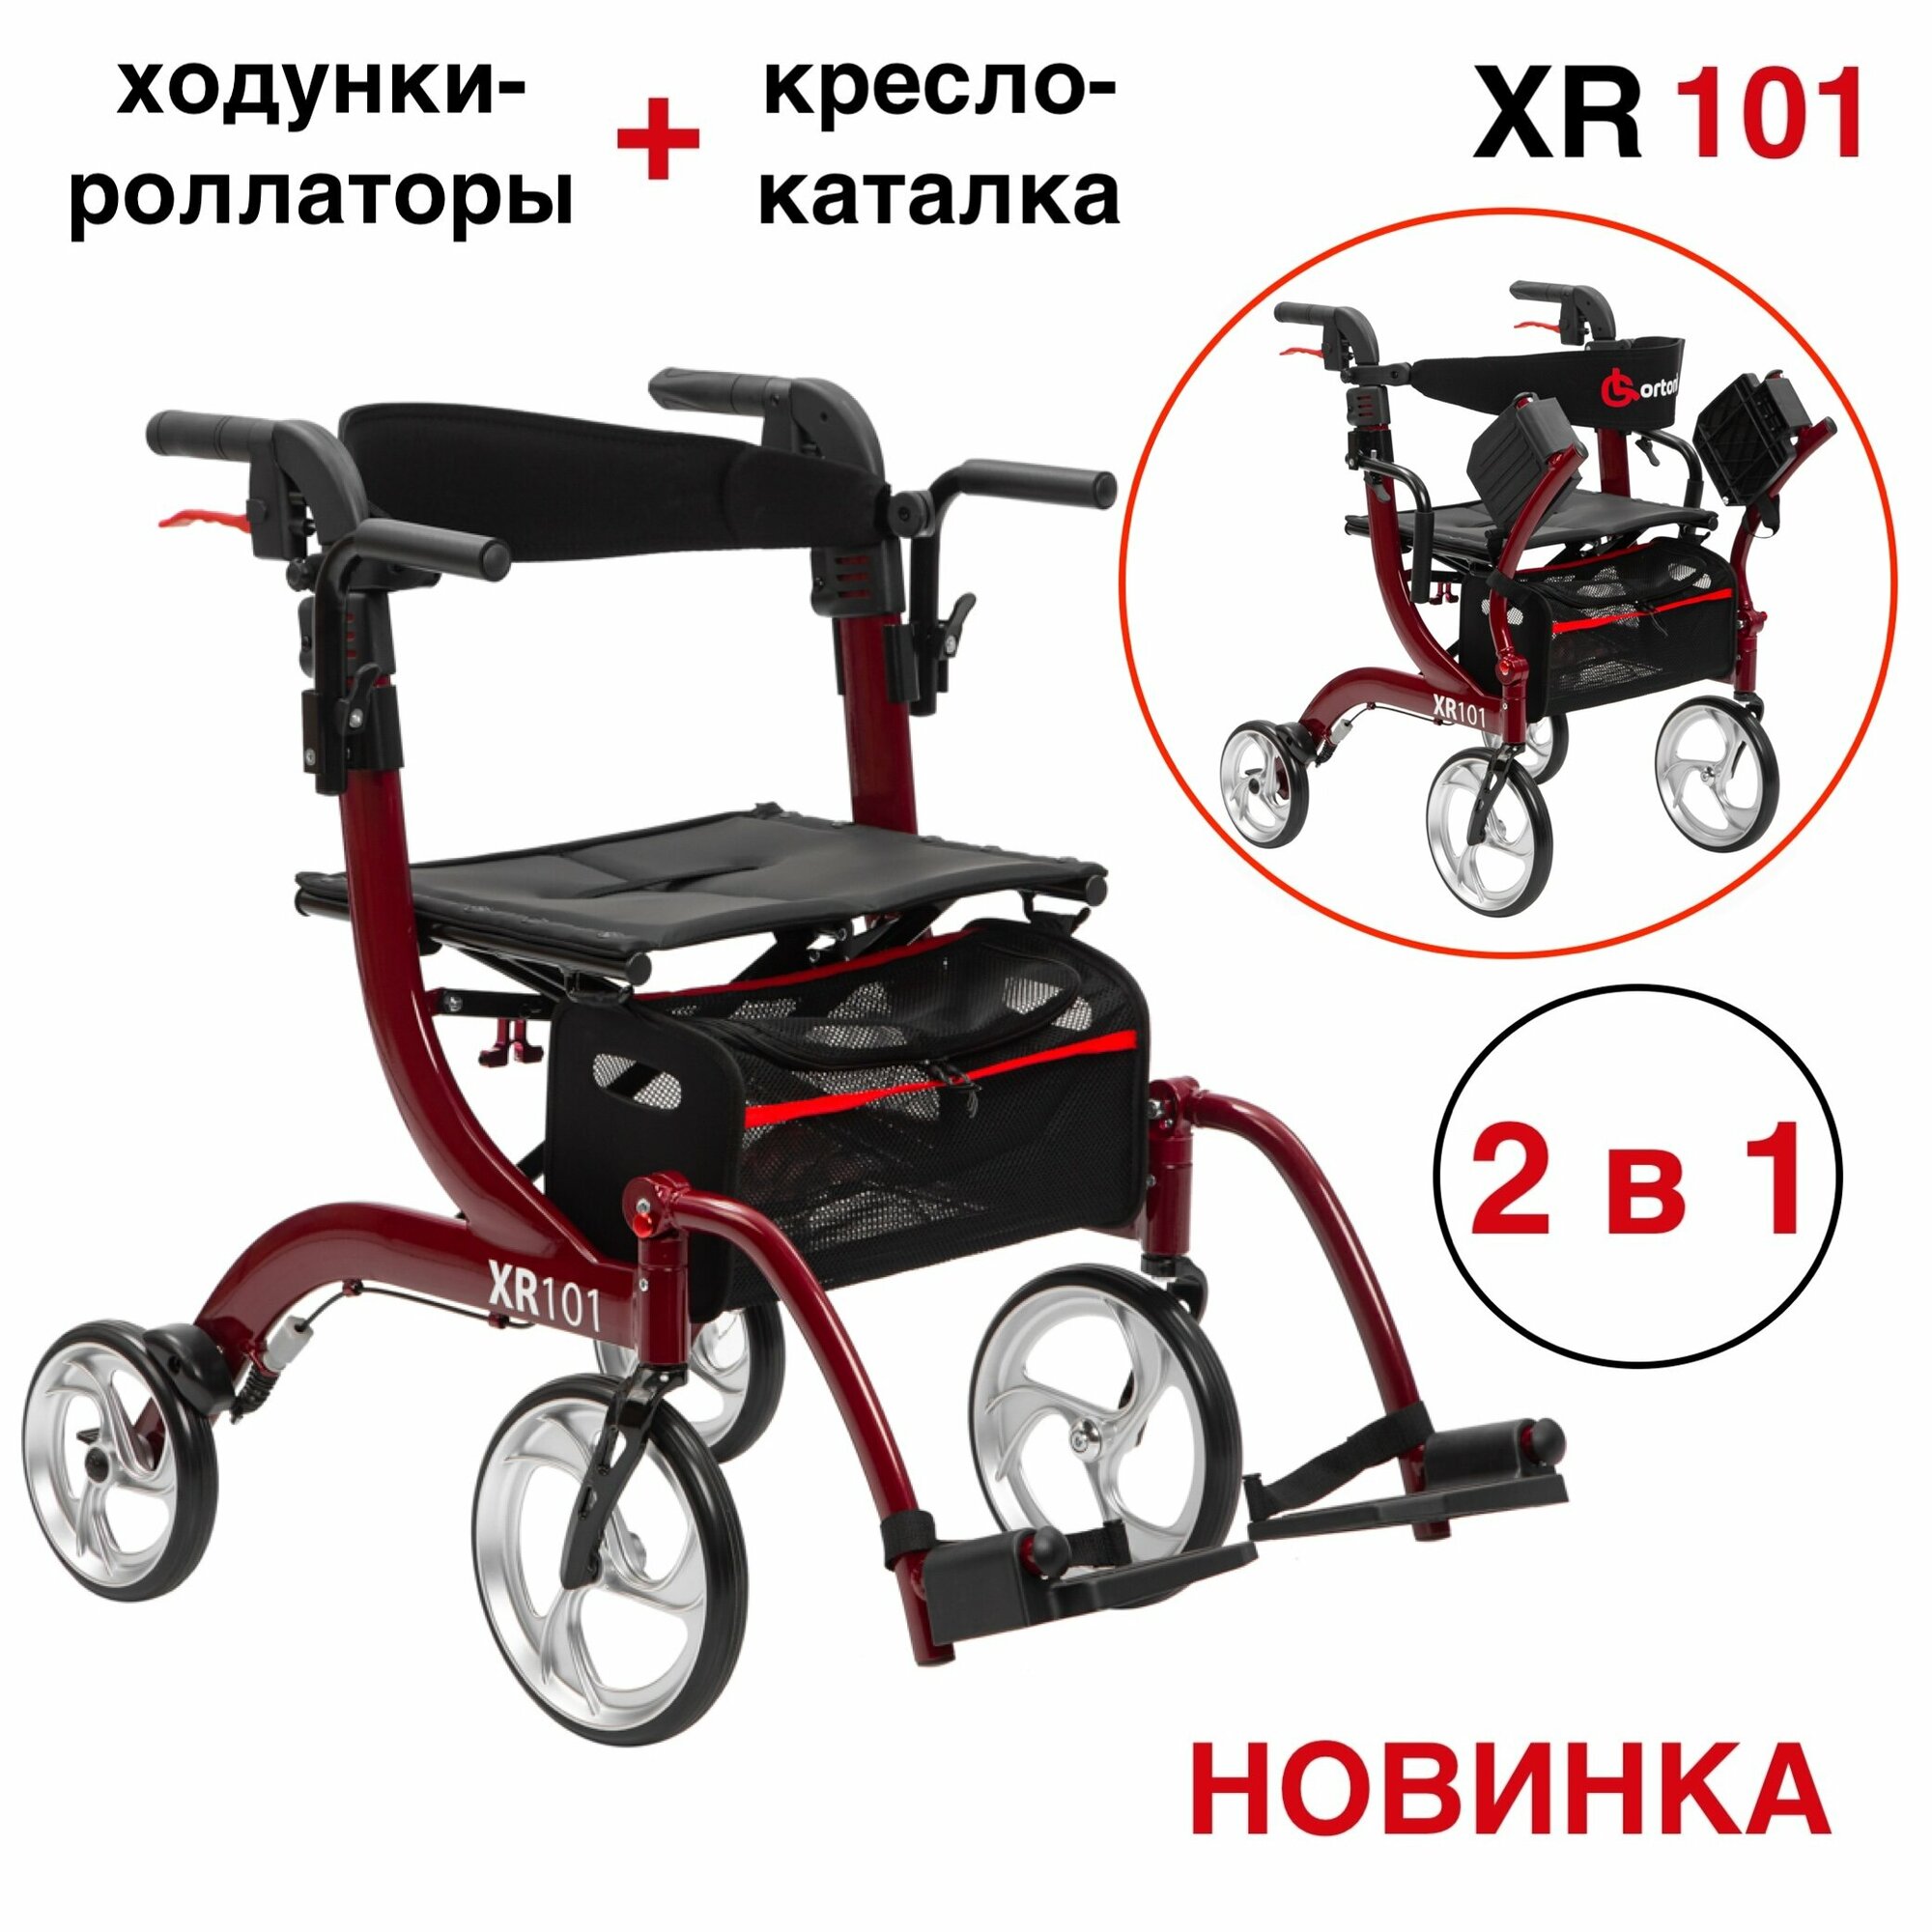 Ходунки-роллаторы-каталка для пожилых и инвалидов Ortonica XR 101 складные с сиденьем подлокотниками подножками 4 колеса легкие регулируемые по высоте до 110 кг красная рама